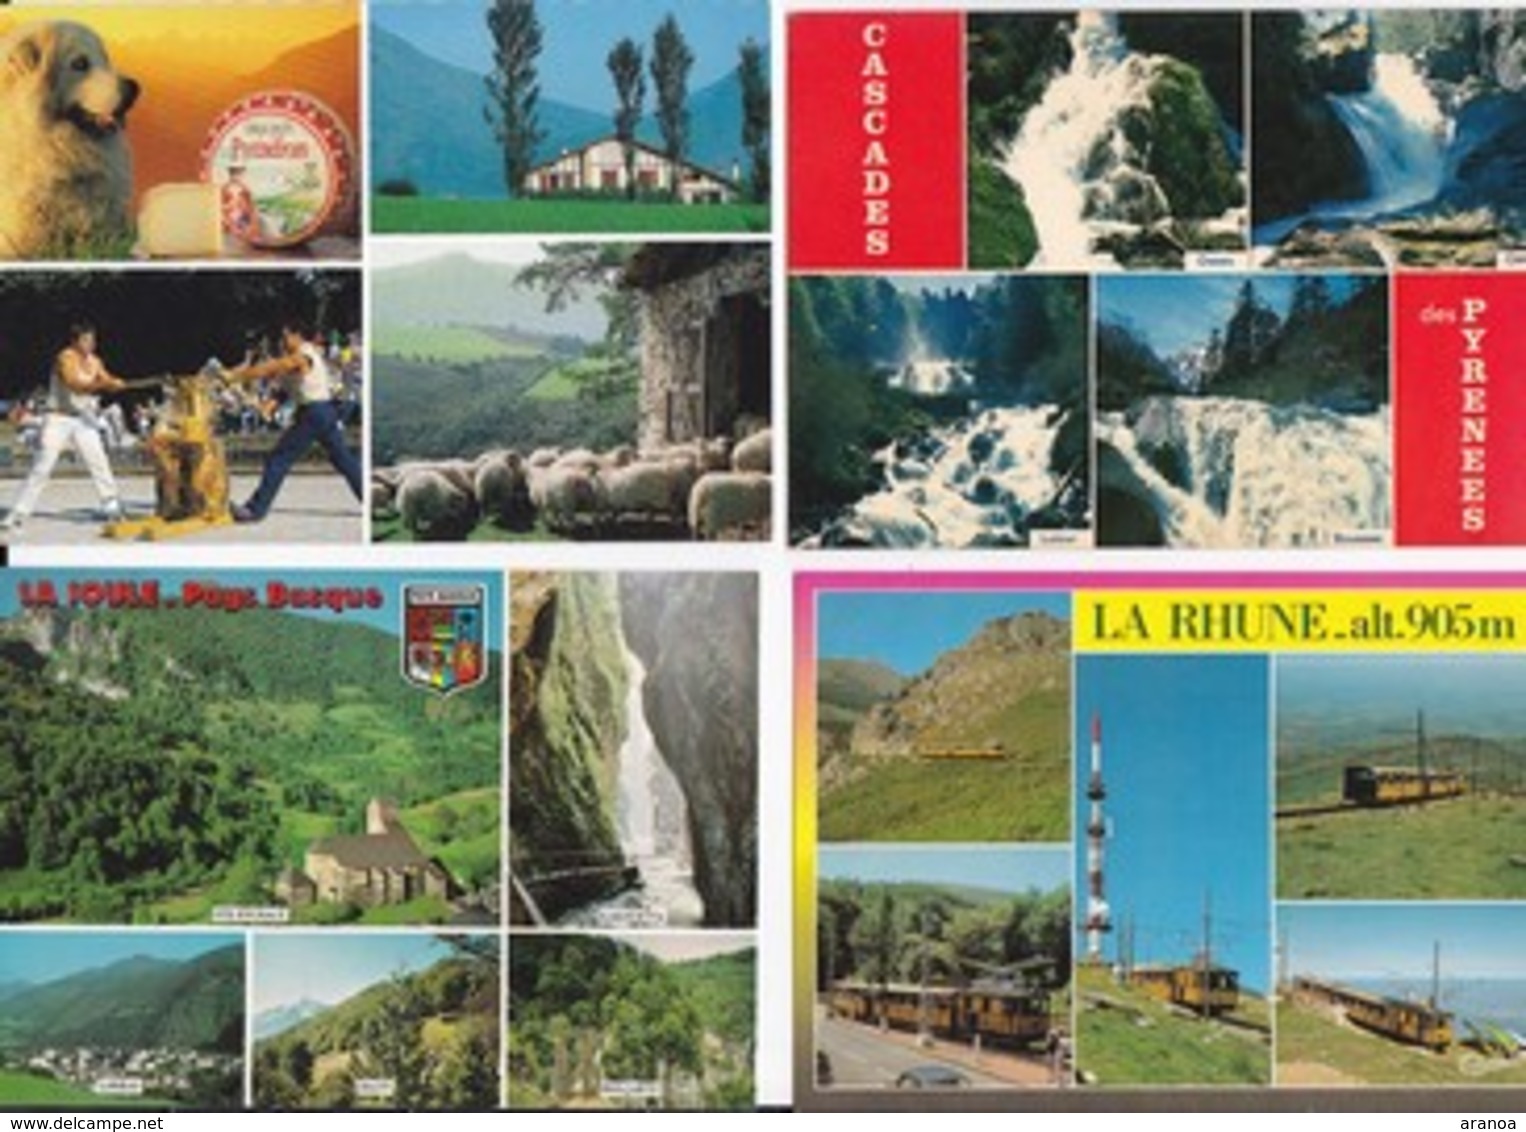 64 - Pyrénées Atlantique - Lot de 100 cartes postales (toutes multivues) majorité Pays Basque